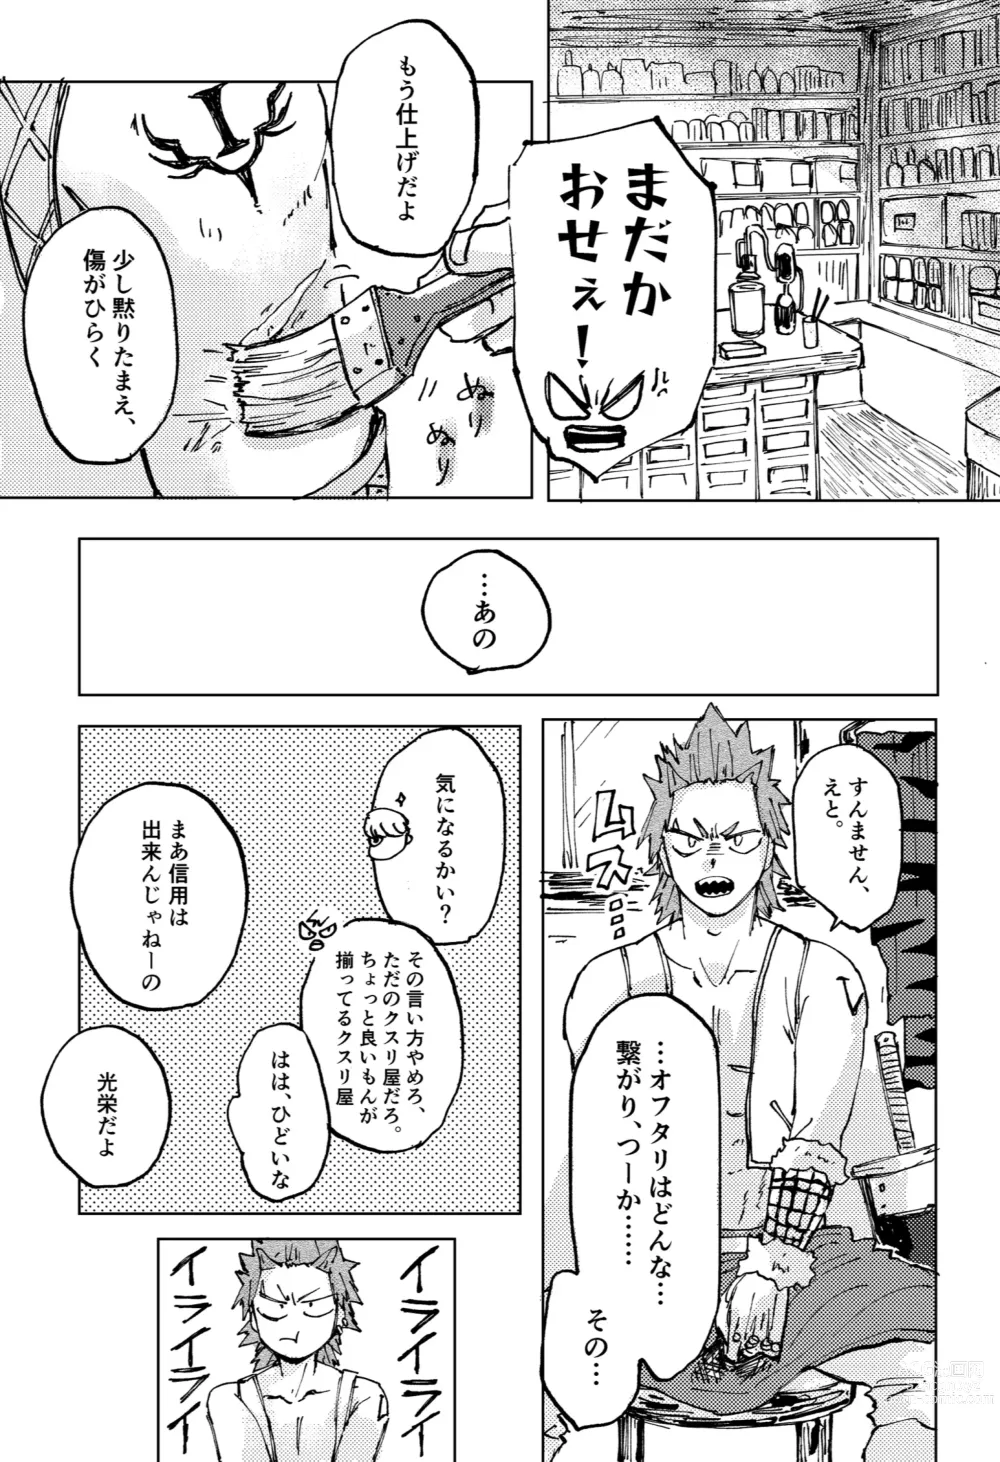 Page 31 of doujinshi Futatsu no Inochi